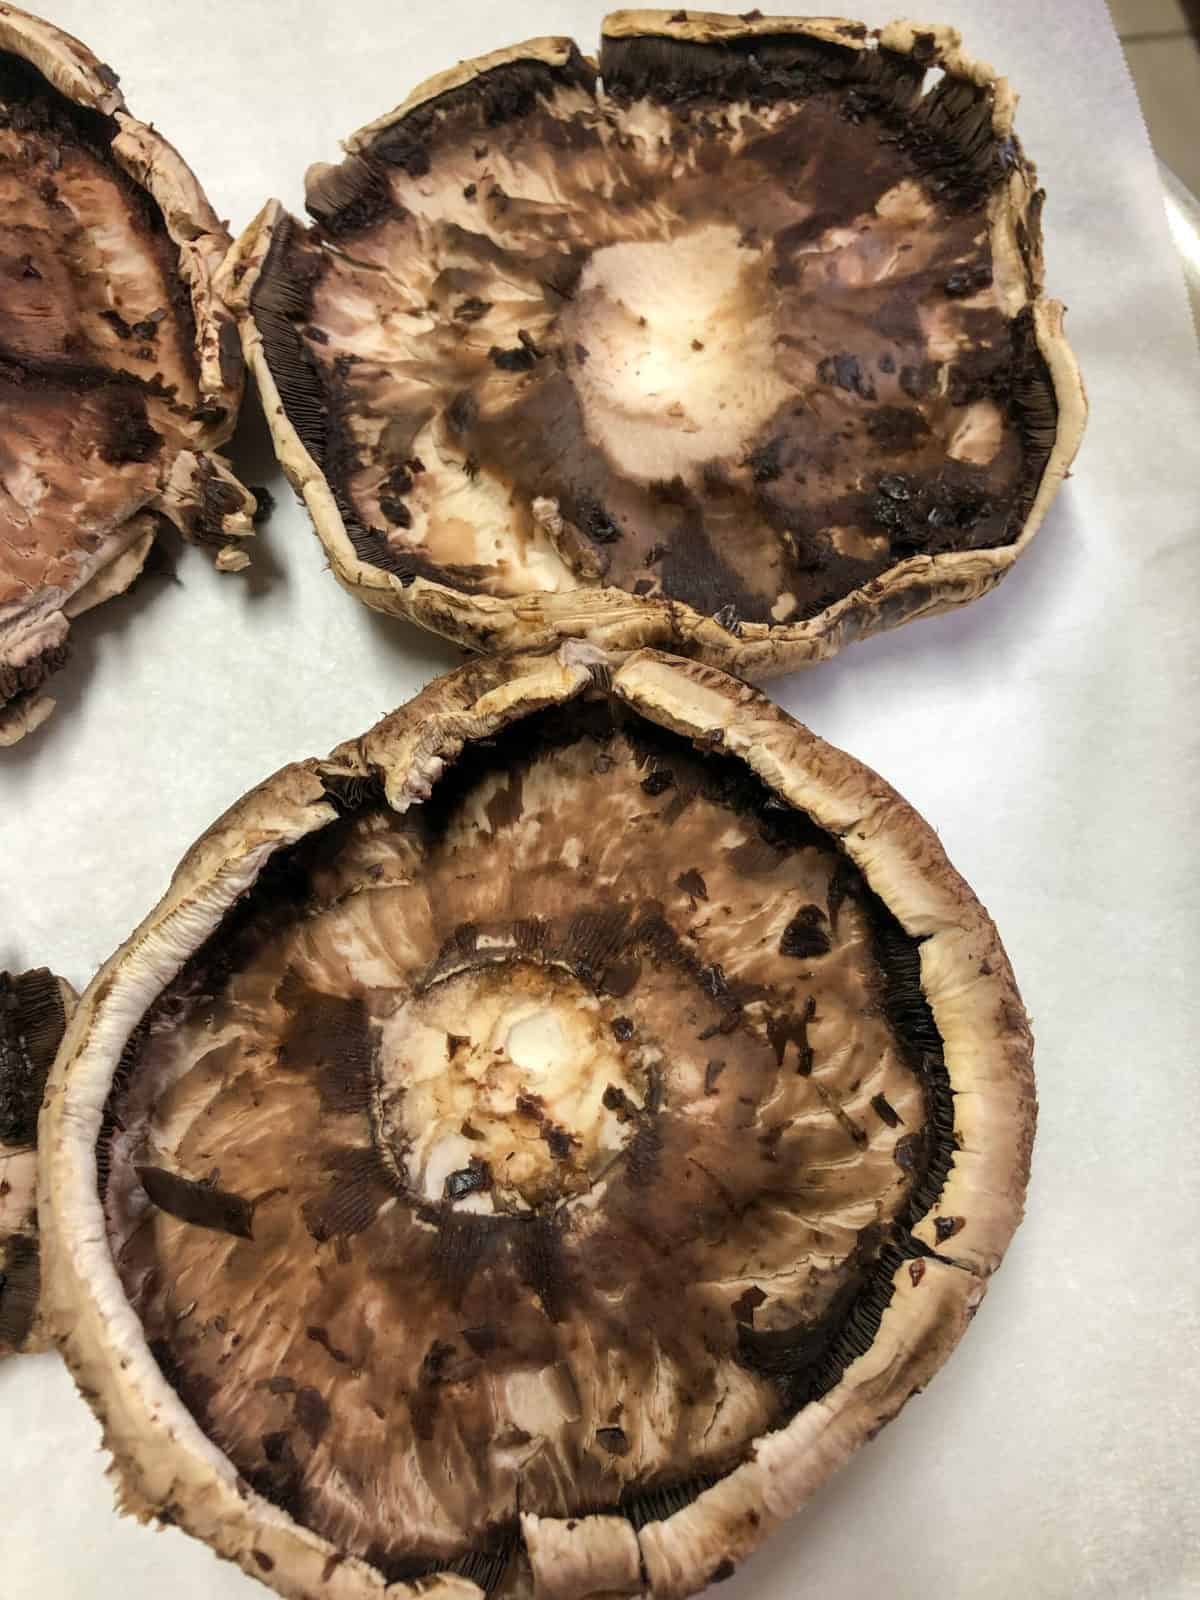 Cleaned portobello mushrooms ready for filling